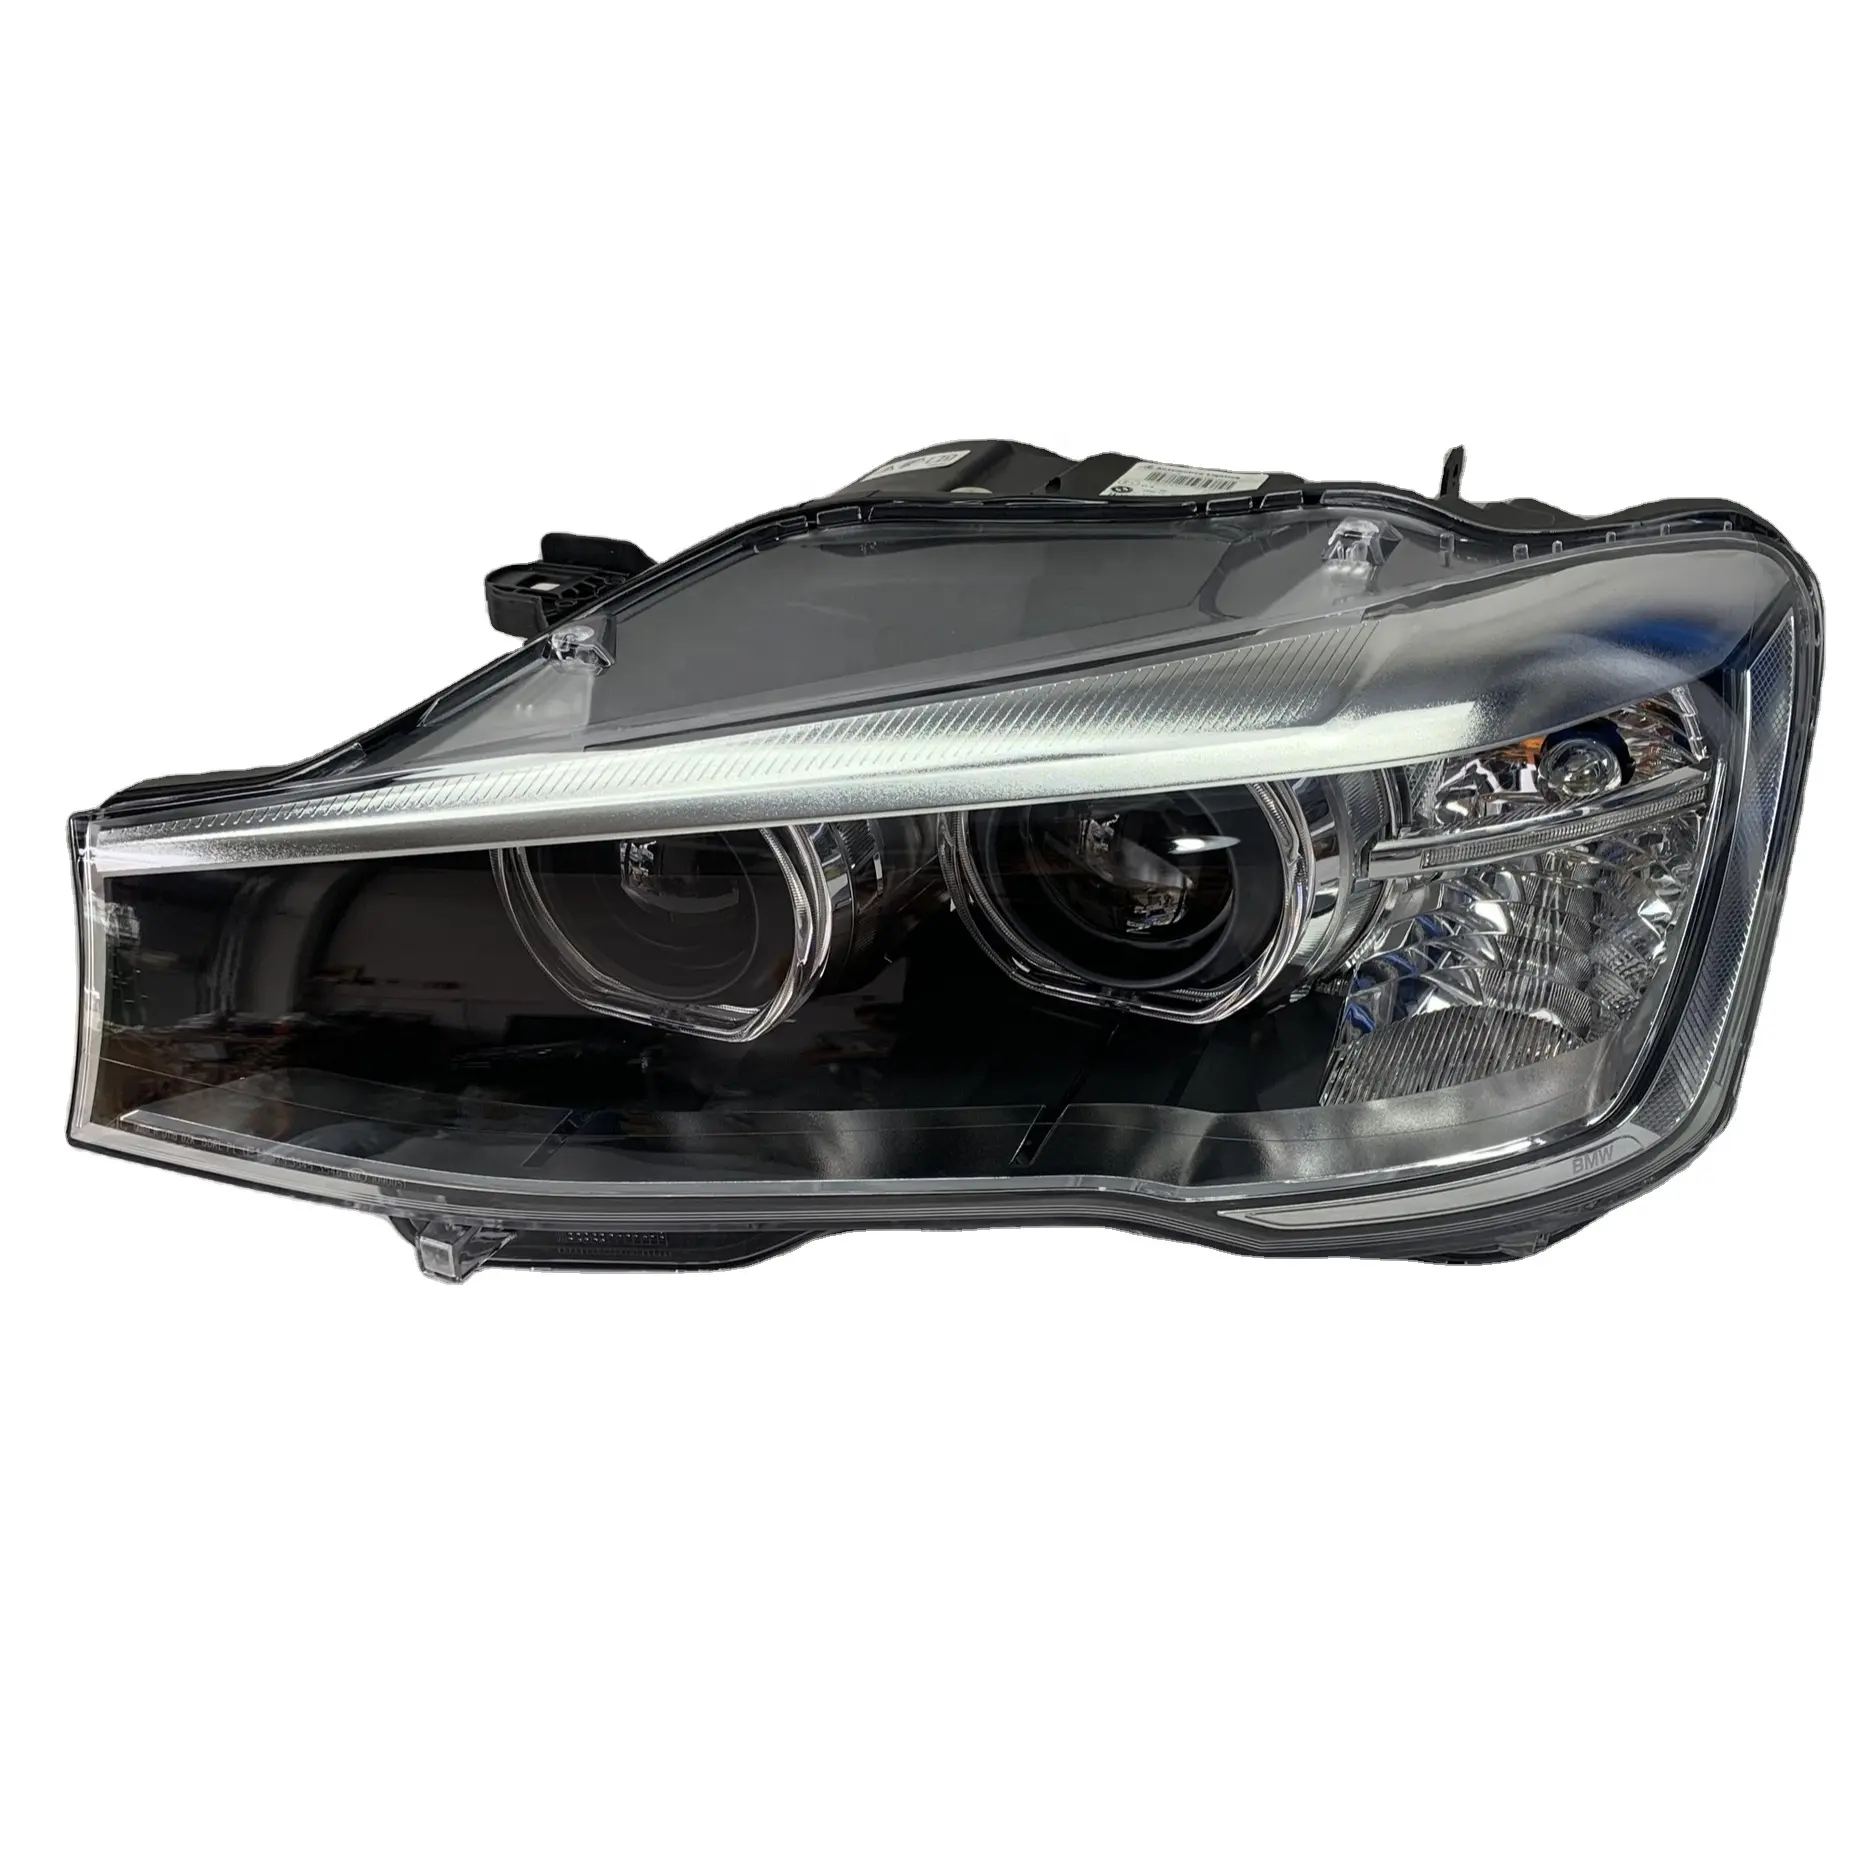 Đèn Pha Chất lượng cao nguyên bản phù hợp với đèn pha thoát vị kép BMW x3x4 F25 F26 từ 2014 đến 2017 oe6311740131